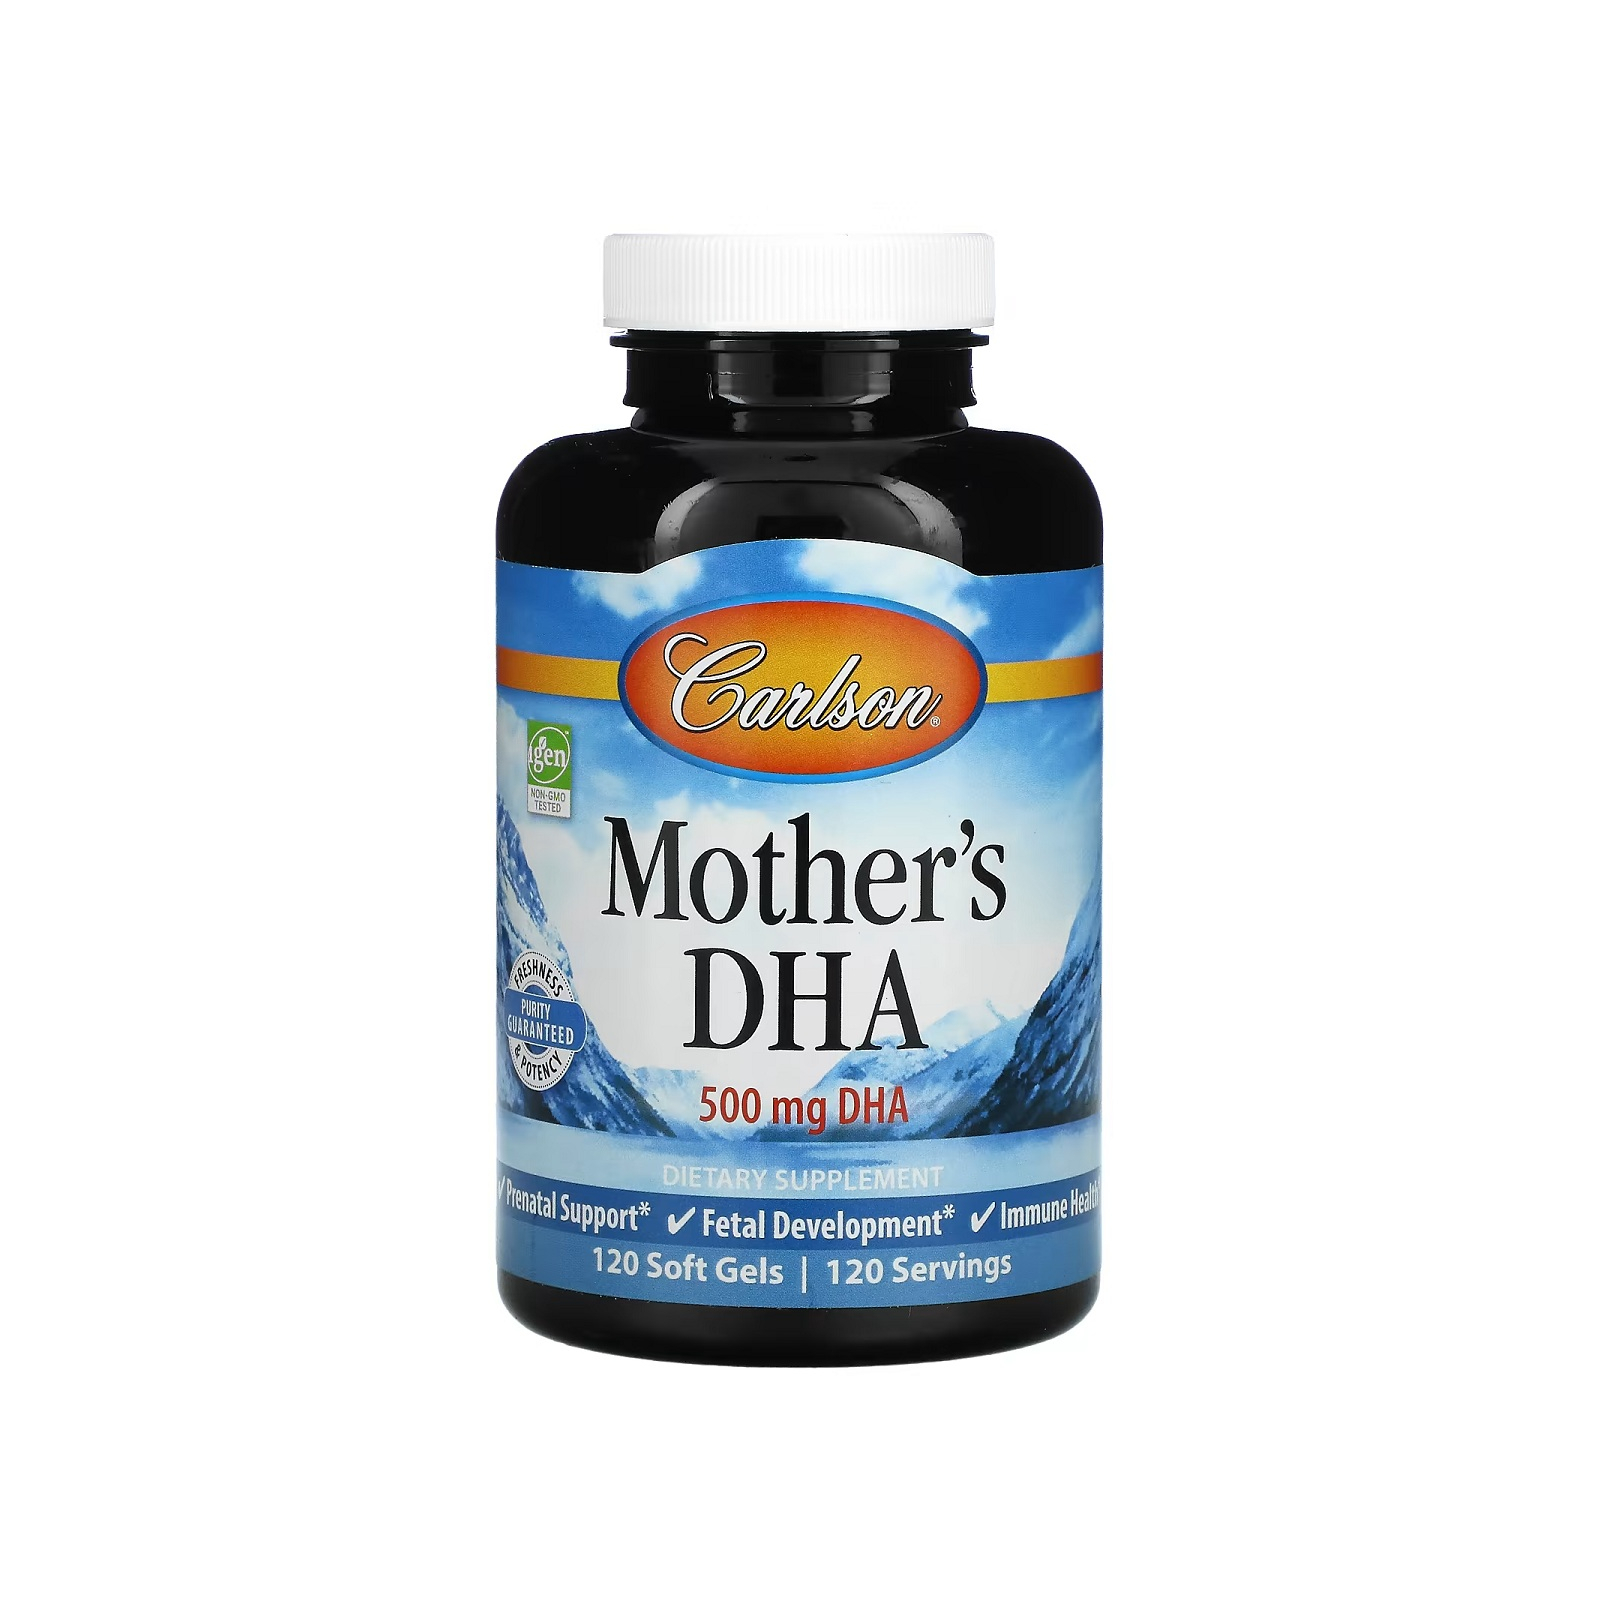 Жирні кислоти Carlson DHA для вагітних і матерів-годувальниць, 500 мг, Mother's DH (CAR-01561)